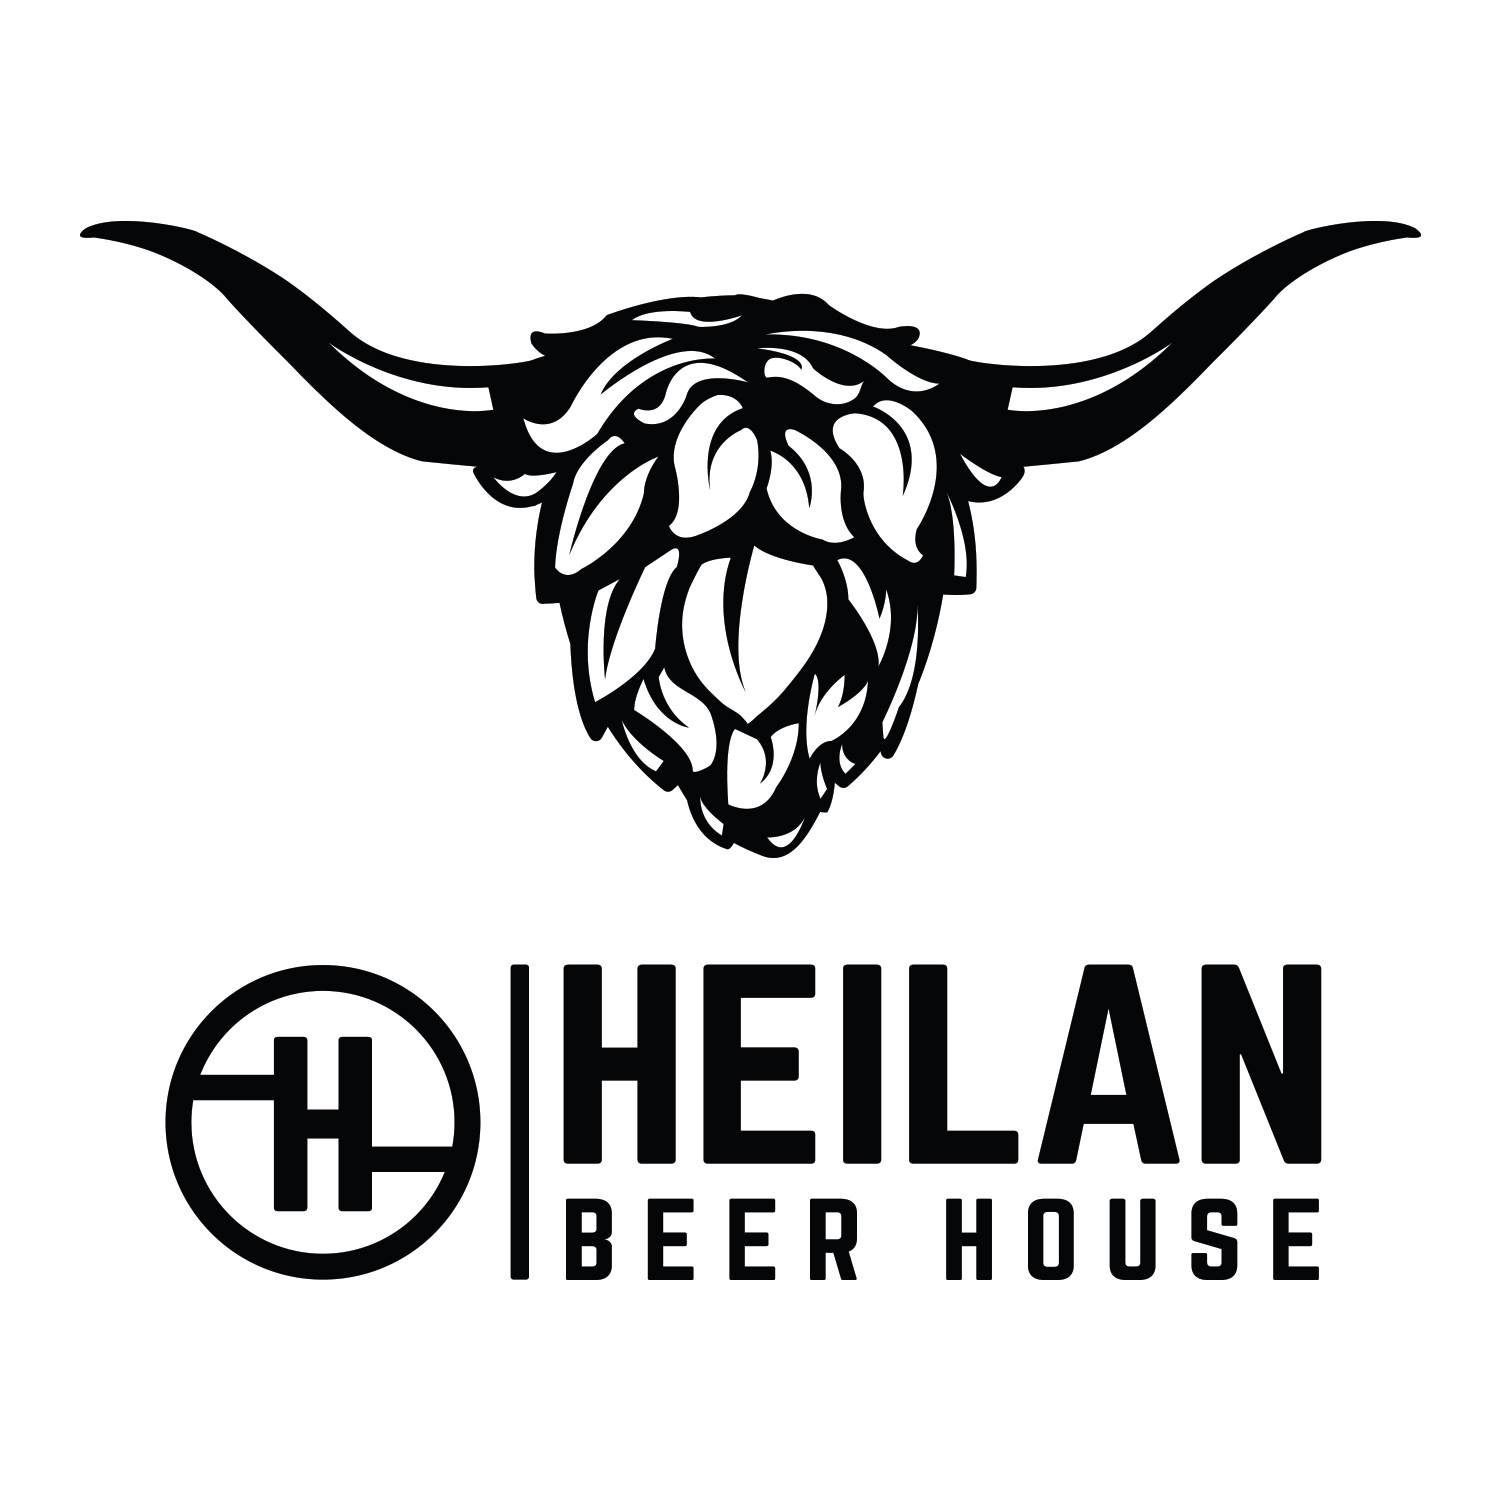 Heilan Beer House